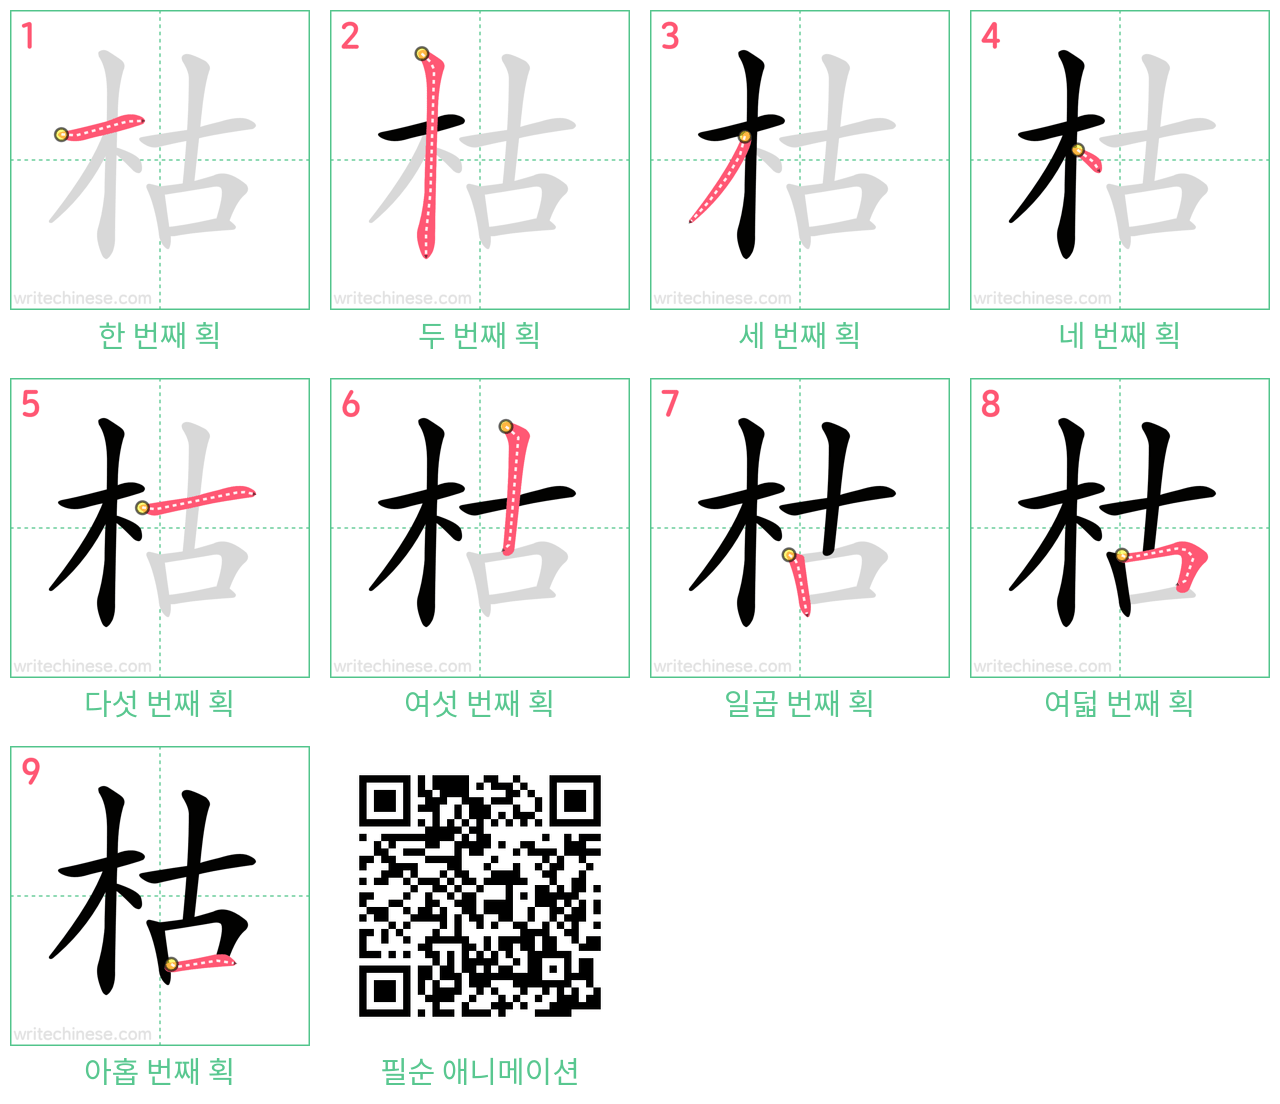 枯 step-by-step stroke order diagrams